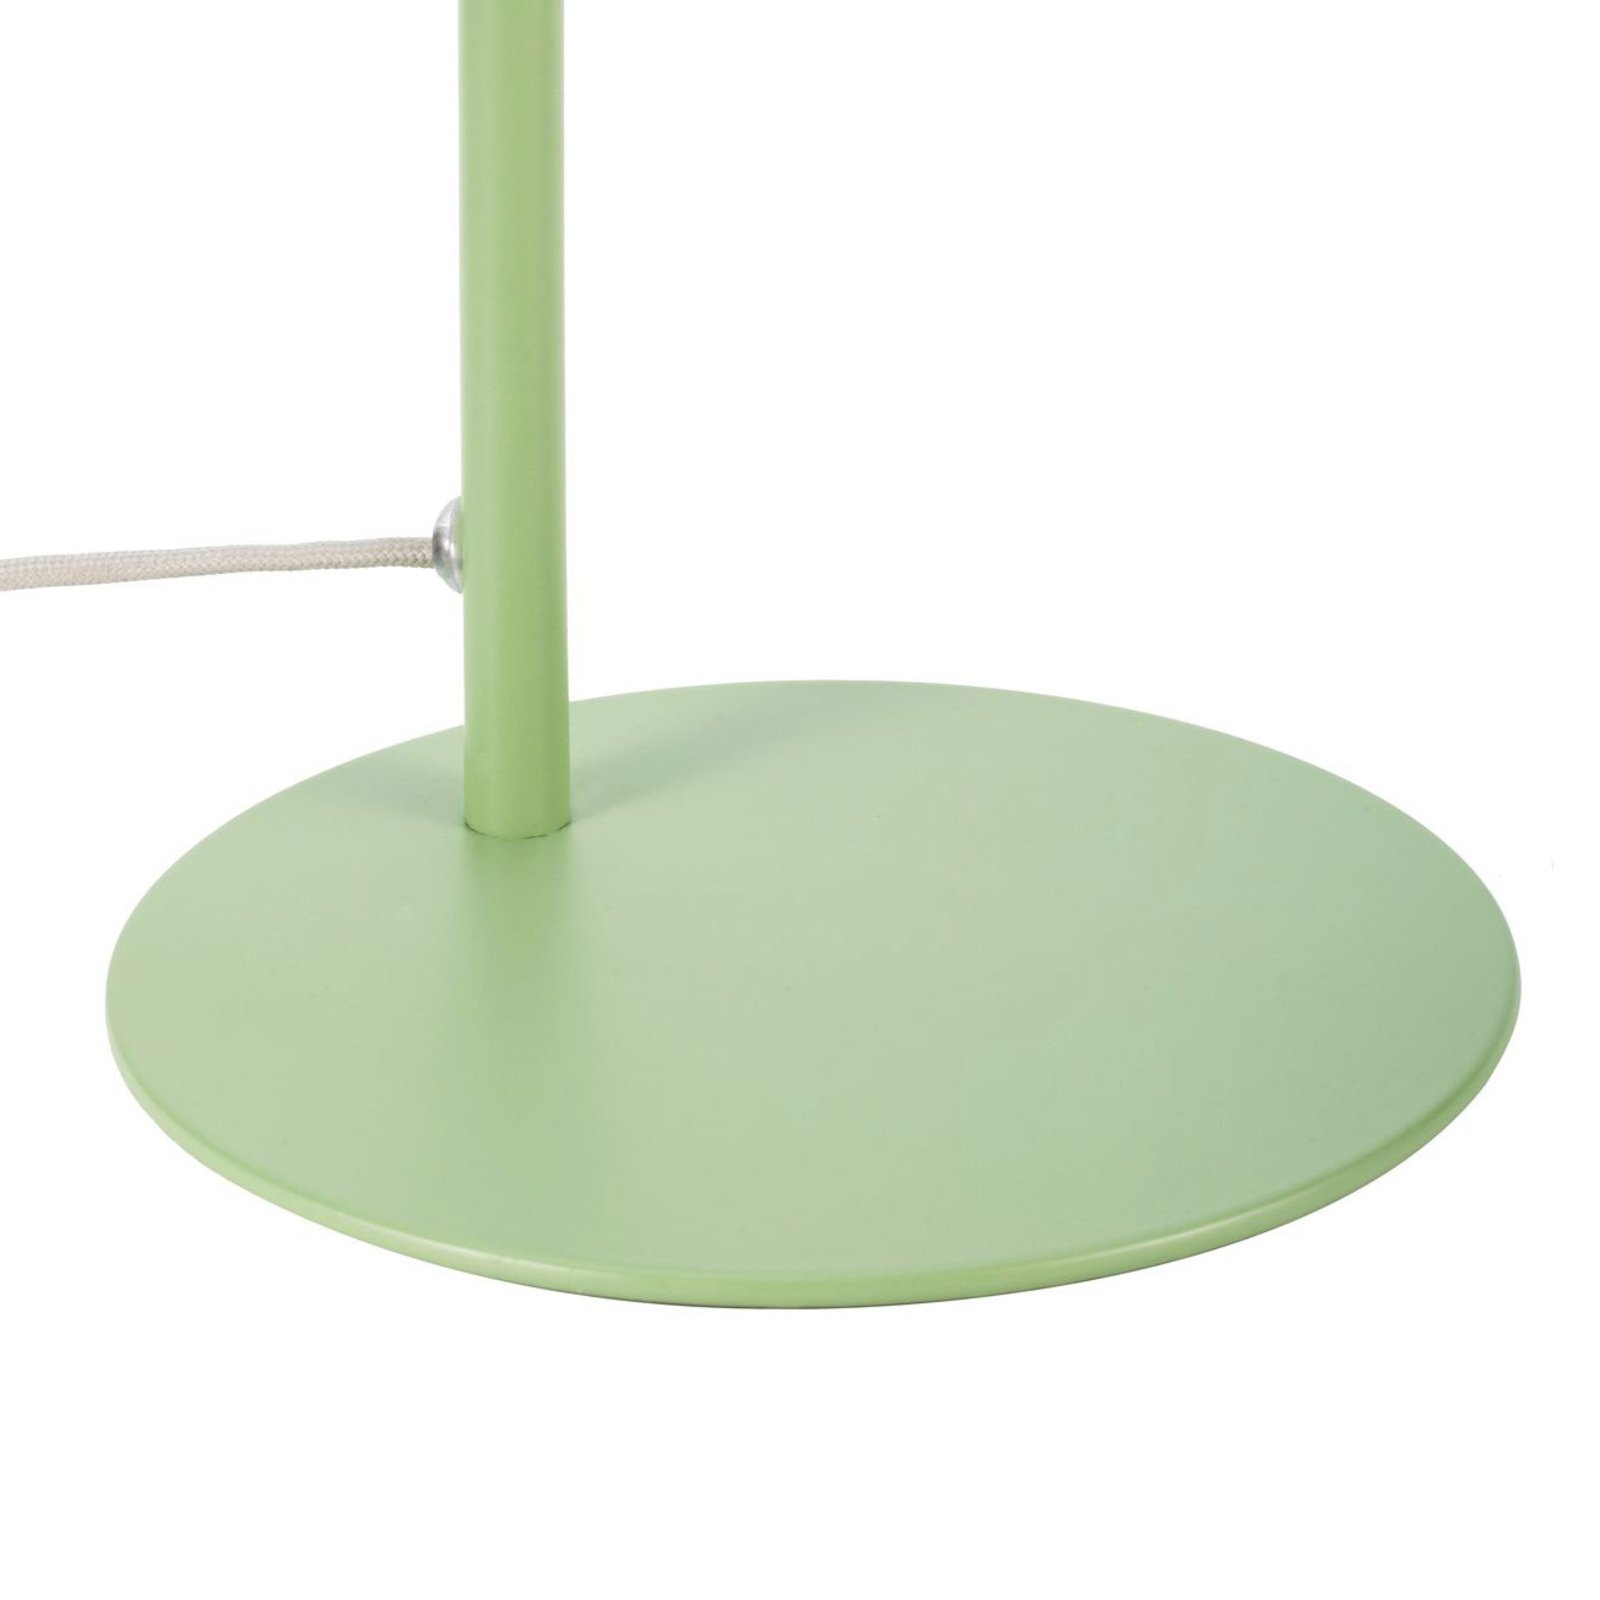 Pauleen True Pistachio stolní lampa v zelené barvě